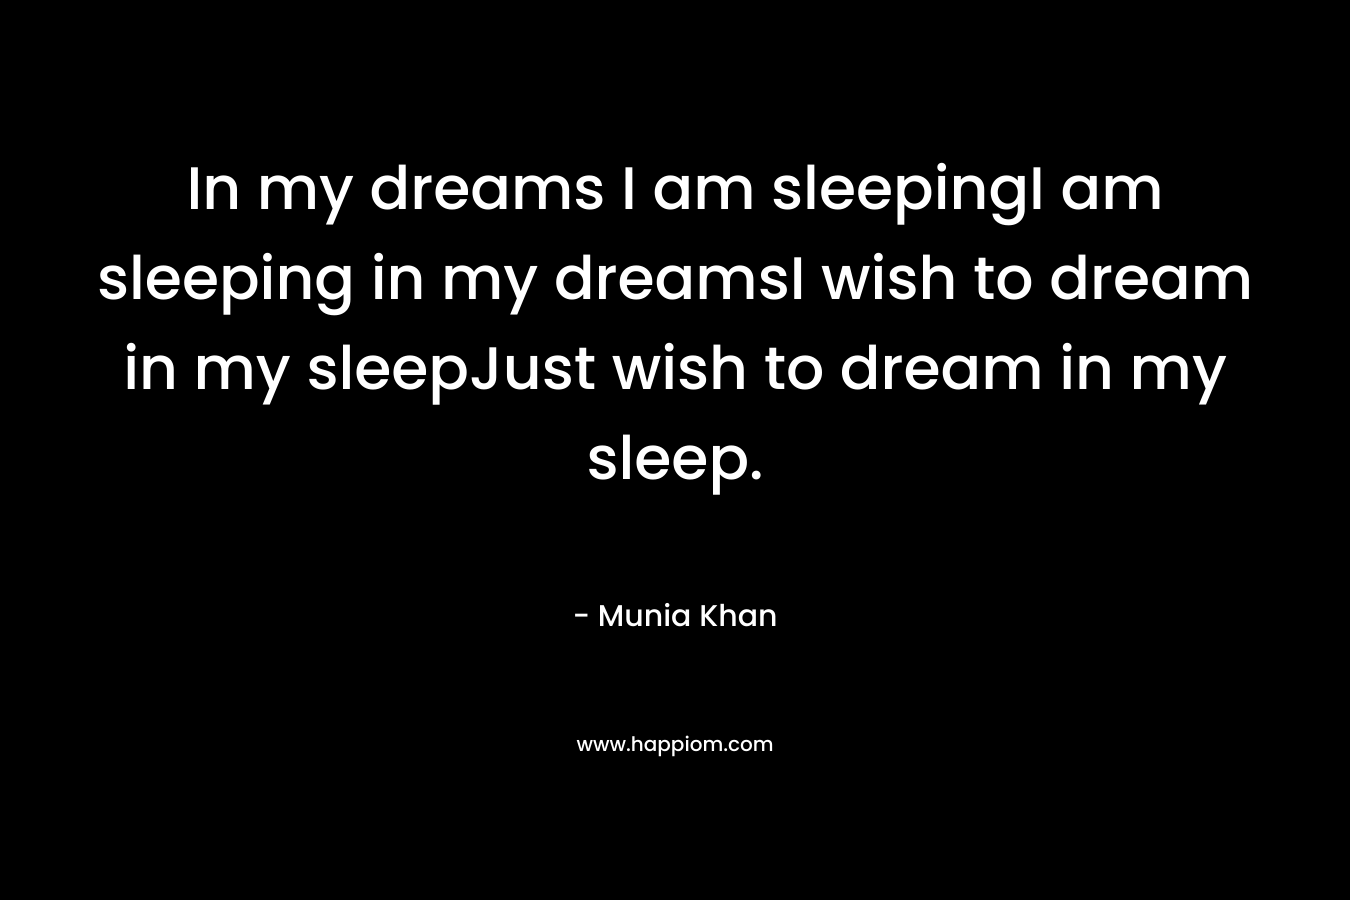 In my dreams I am sleepingI am sleeping in my dreamsI wish to dream in my sleepJust wish to dream in my sleep.